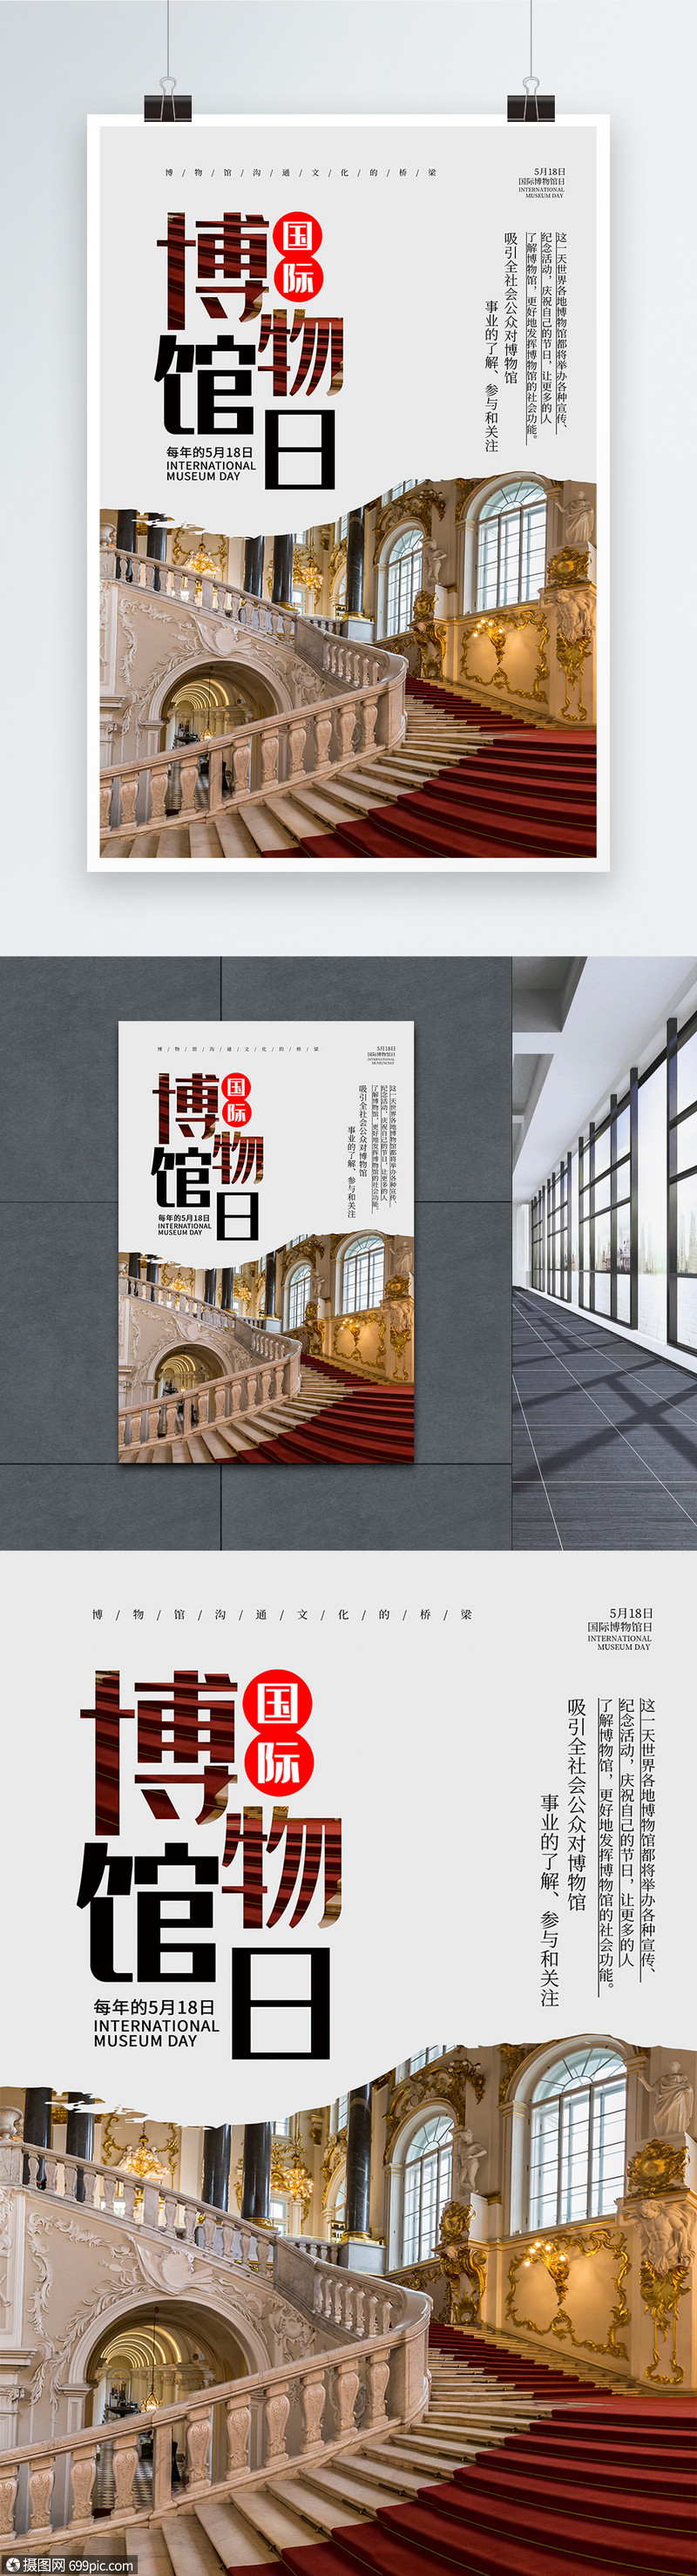 设计模板 海报设计 简约大气国际博物馆日海报psd